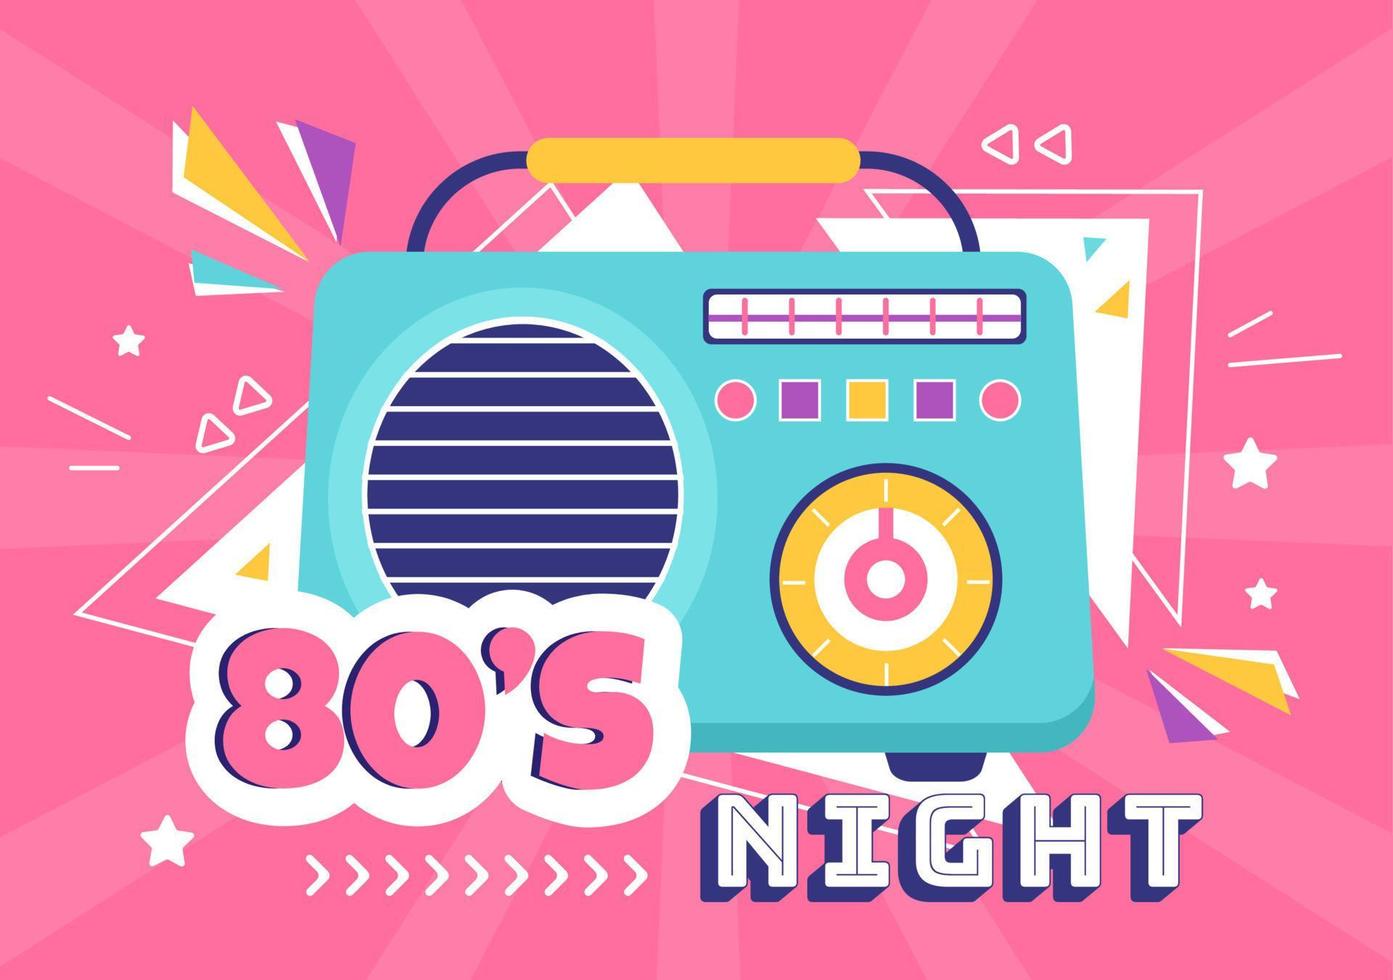 80er-Jahre-Party-Cartoon-Hintergrundillustration mit Retro-Musik, 1980-Radiokassettenspieler und Disco im alten Design vektor